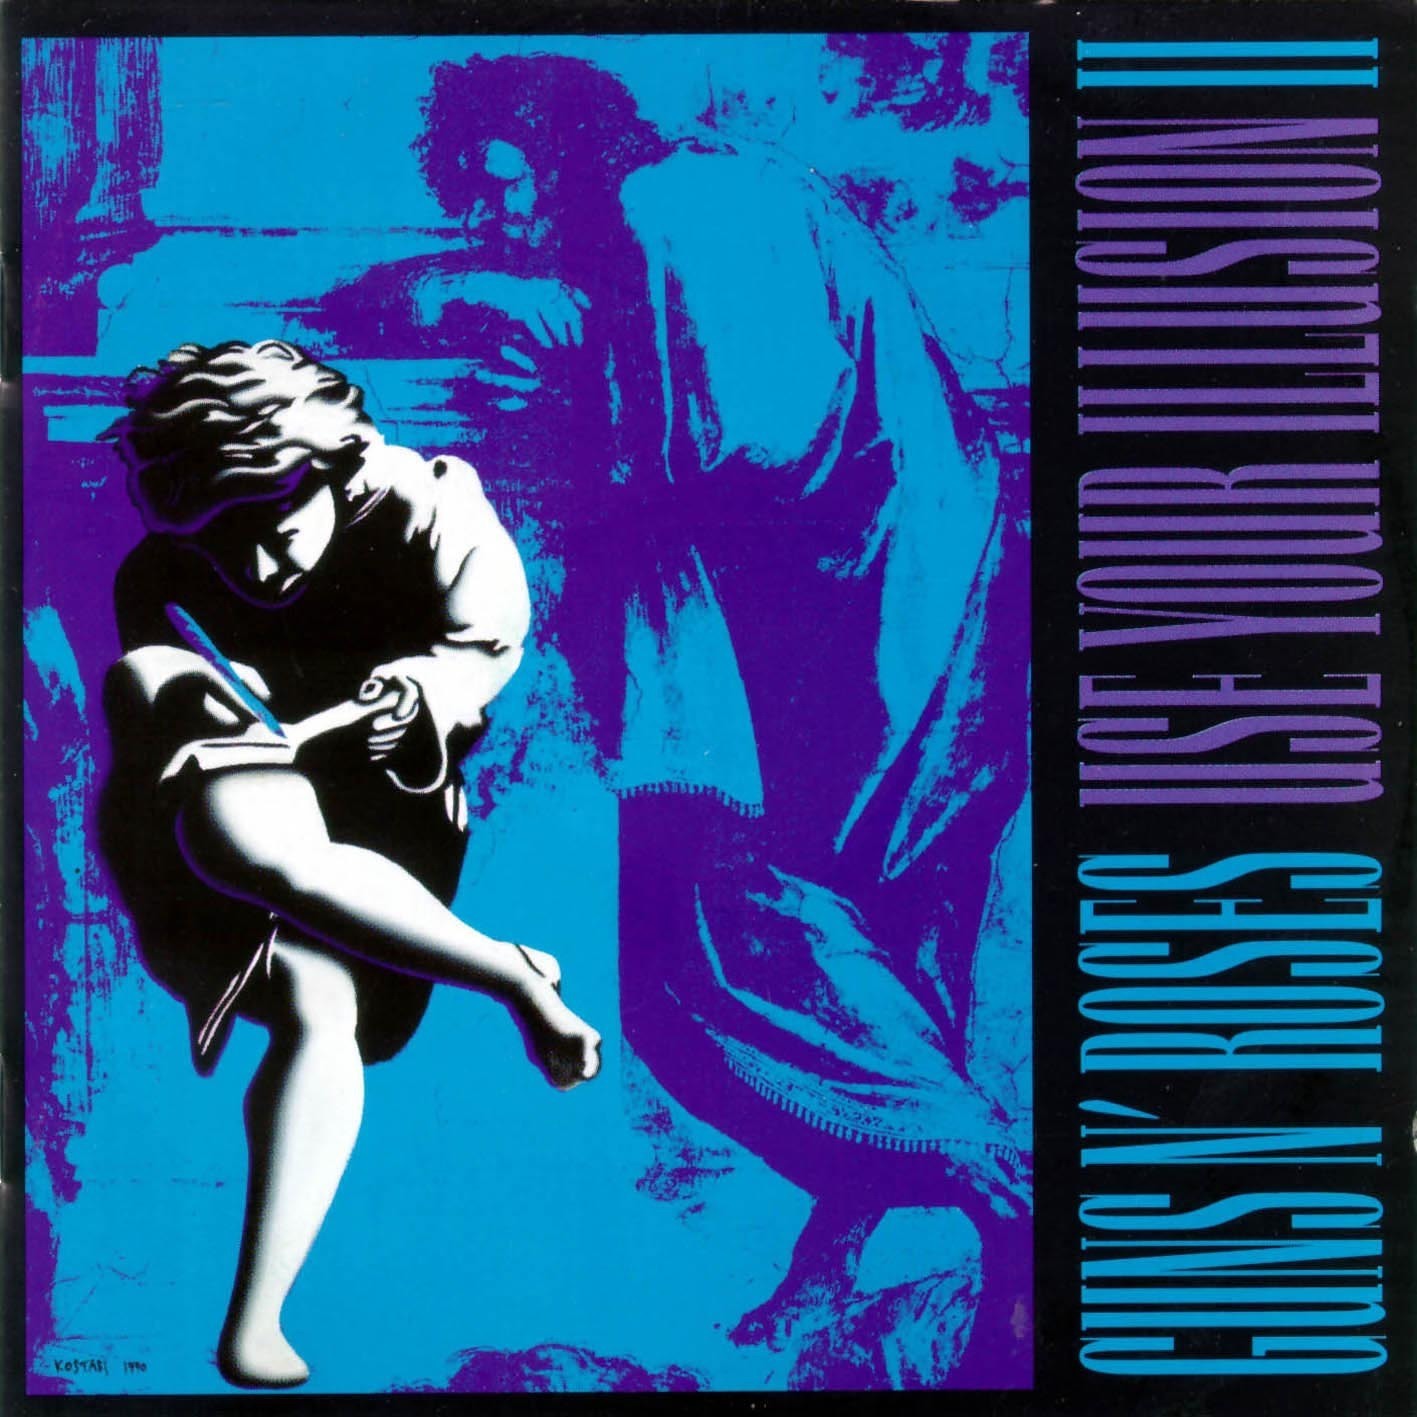 Виниловая пластинка Guns N' Roses, Use Your Illusion Ii (0602445117314) guns n roses use your illusion i 2lp виниловая пластинка